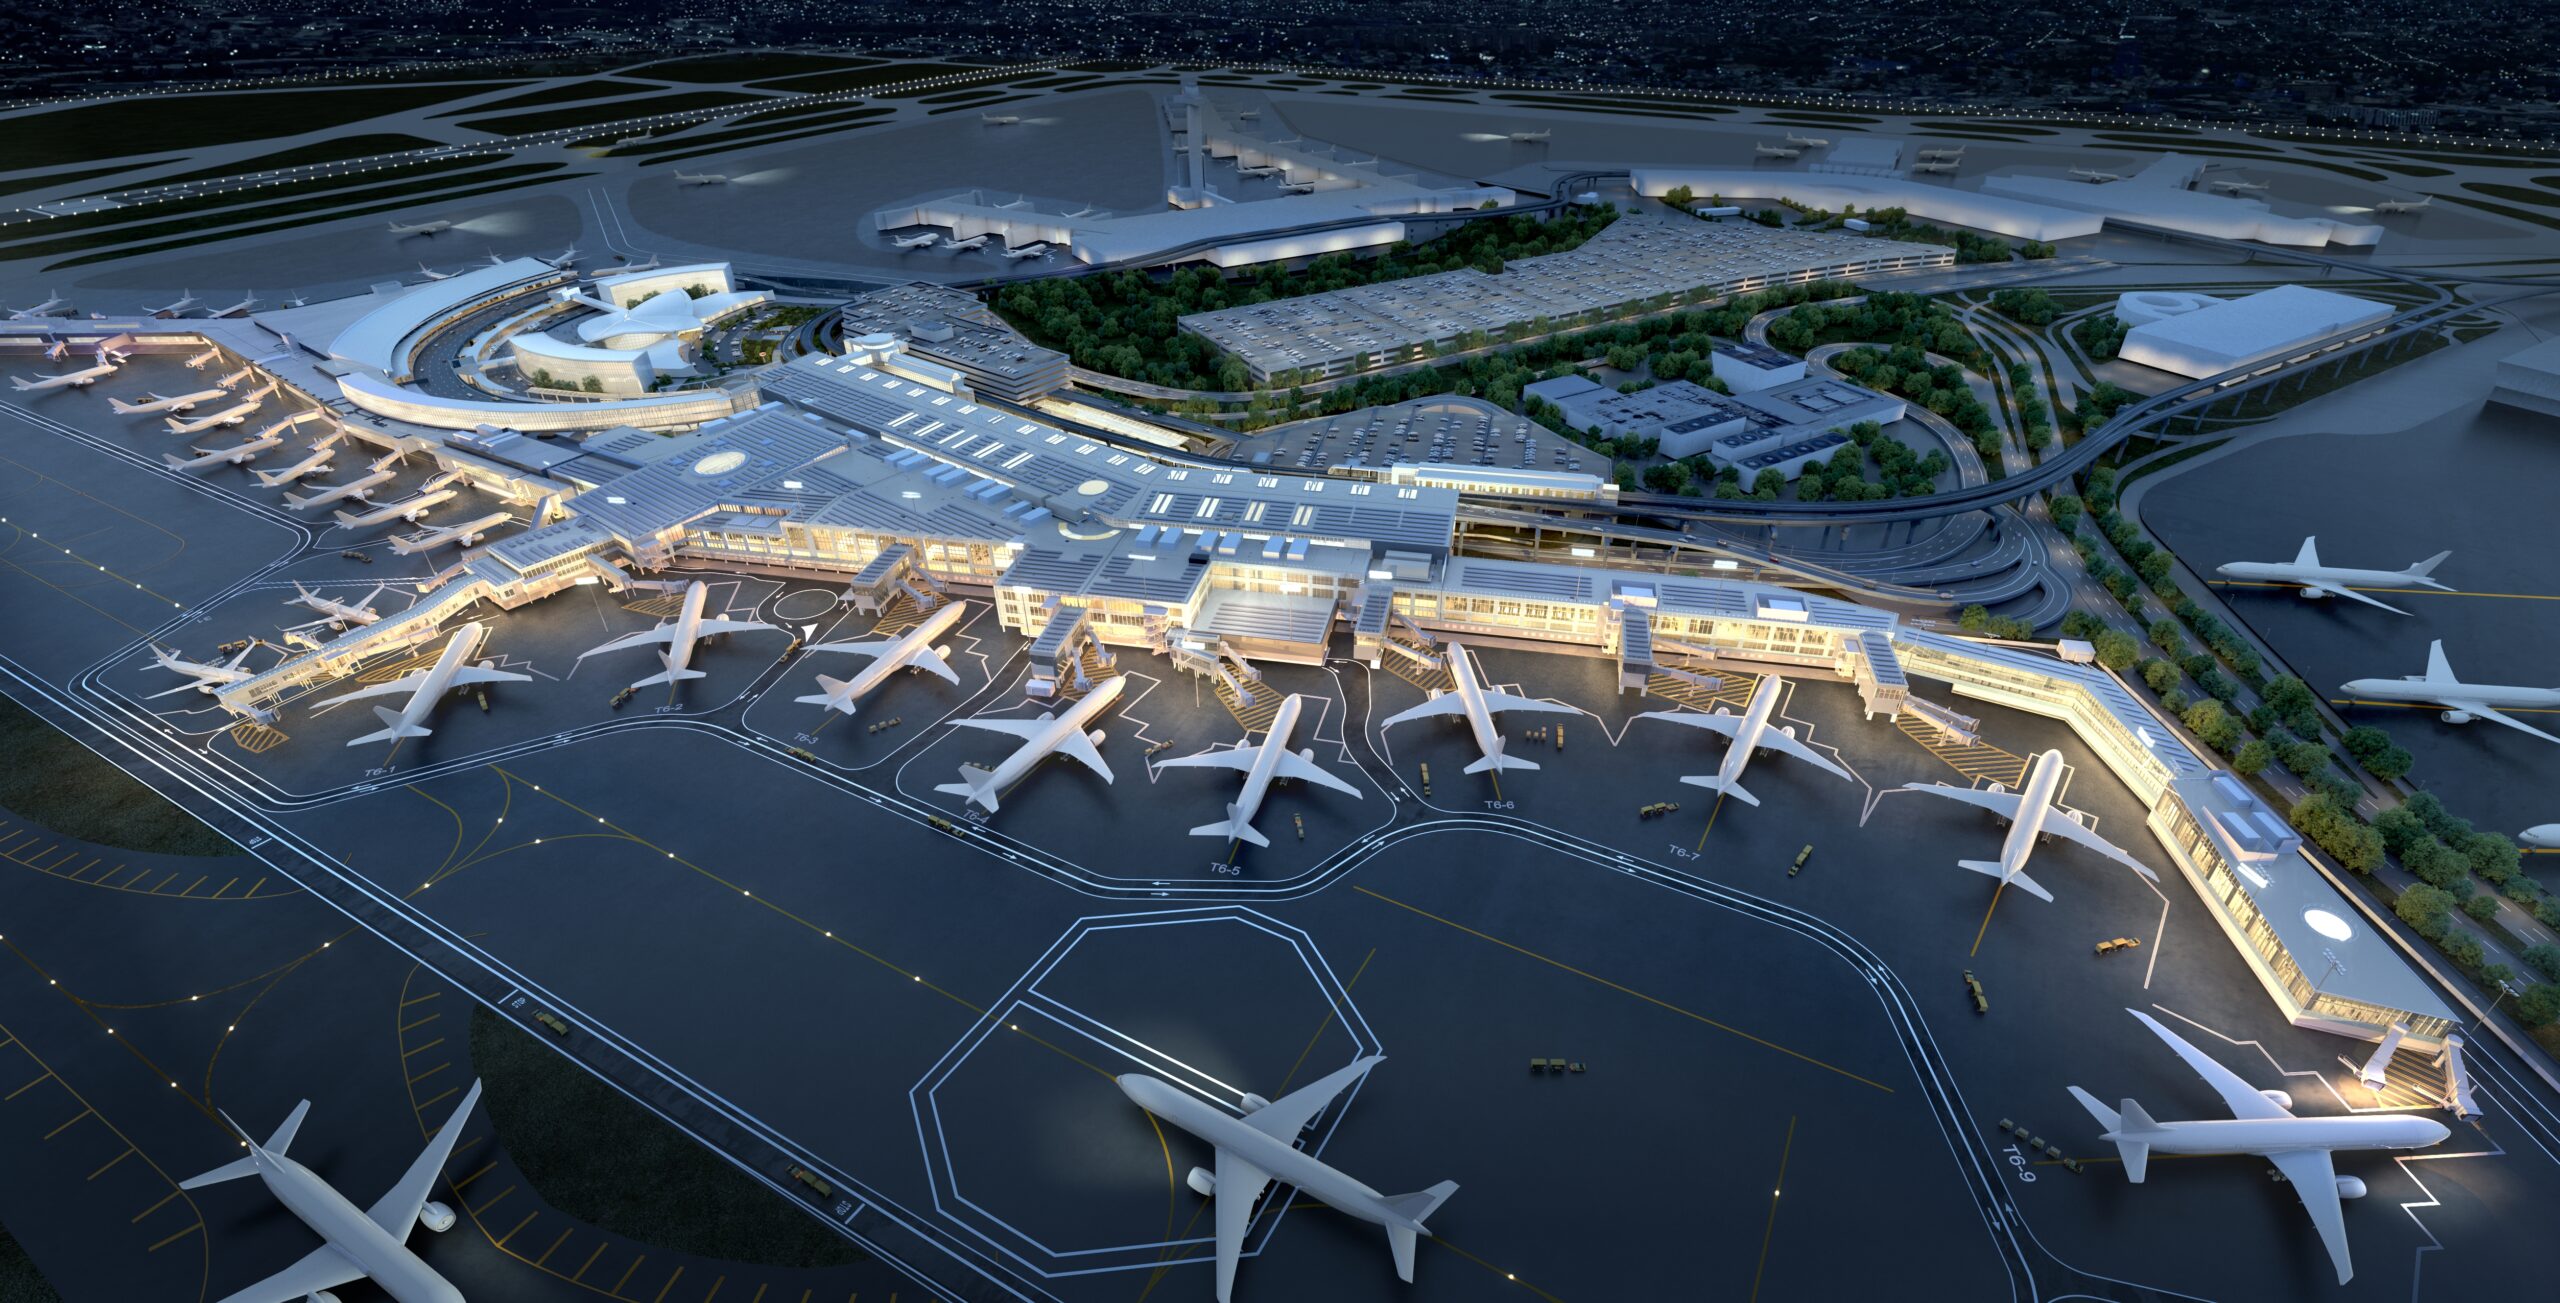 New renderings of JFK Terminal 6